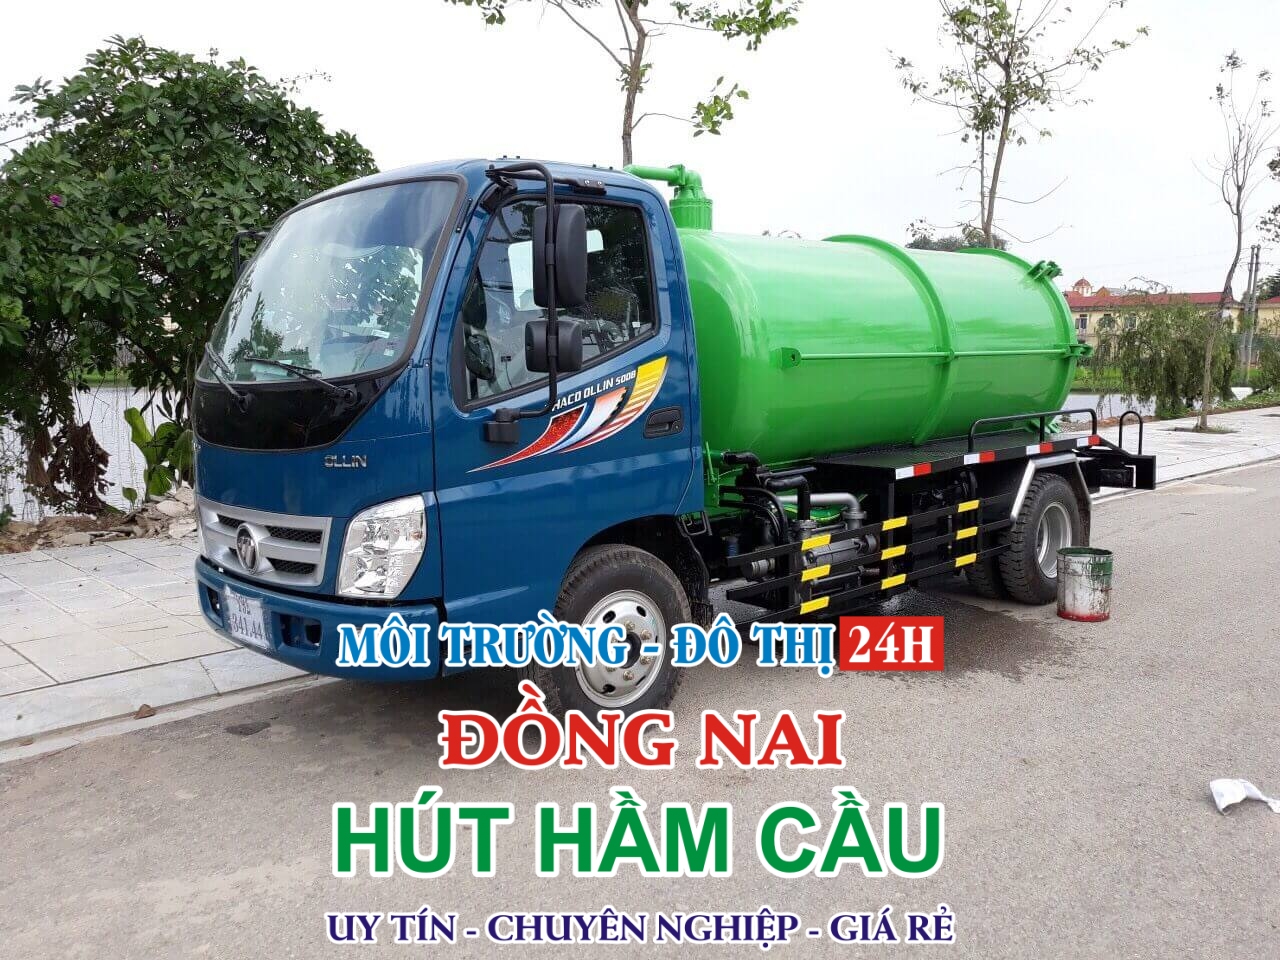 Hút Hầm Cầu Huyện Tân Phú, Đồng Nai